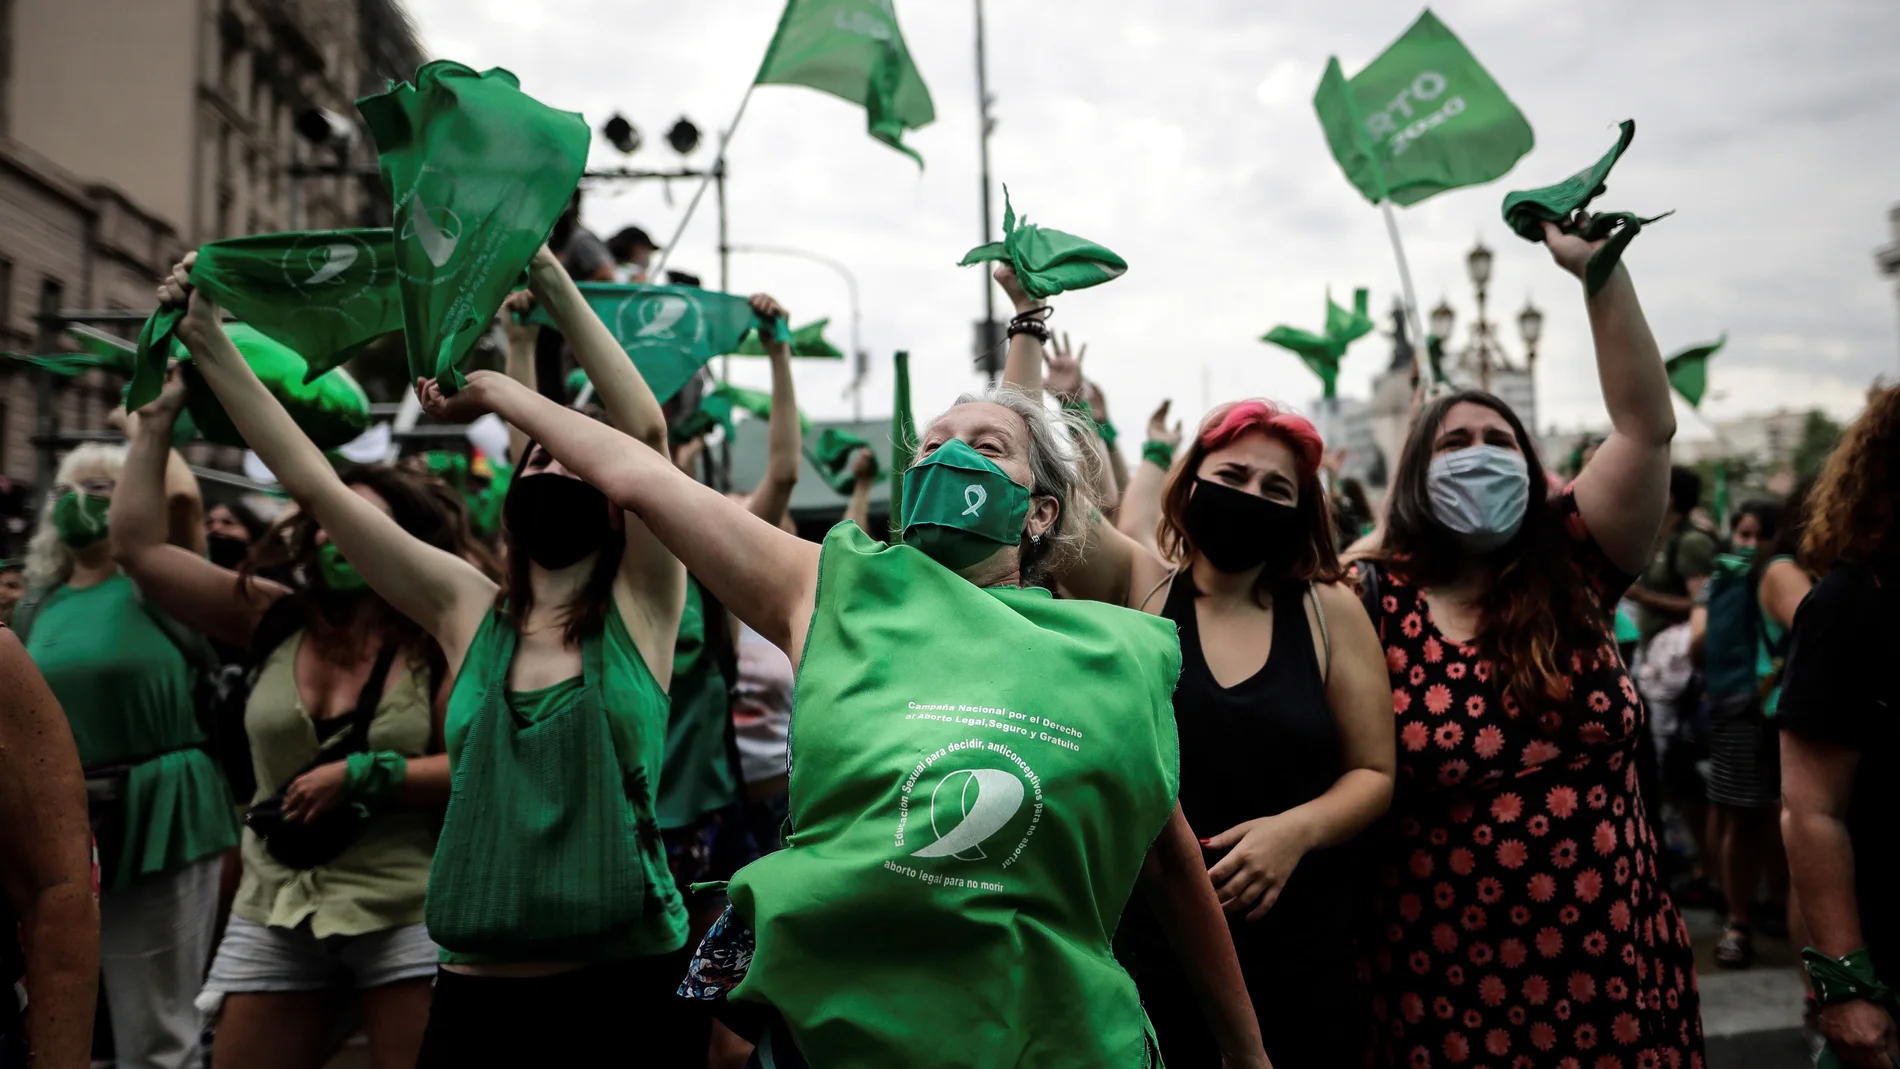 Celebraciones este viernes en Buenos Aires después de que la Cámara de Diputados de Argentina aprobara esta mañana un proyecto de ley que permite acceder libre y legalmente al aborto hasta la semana 14 de gestación